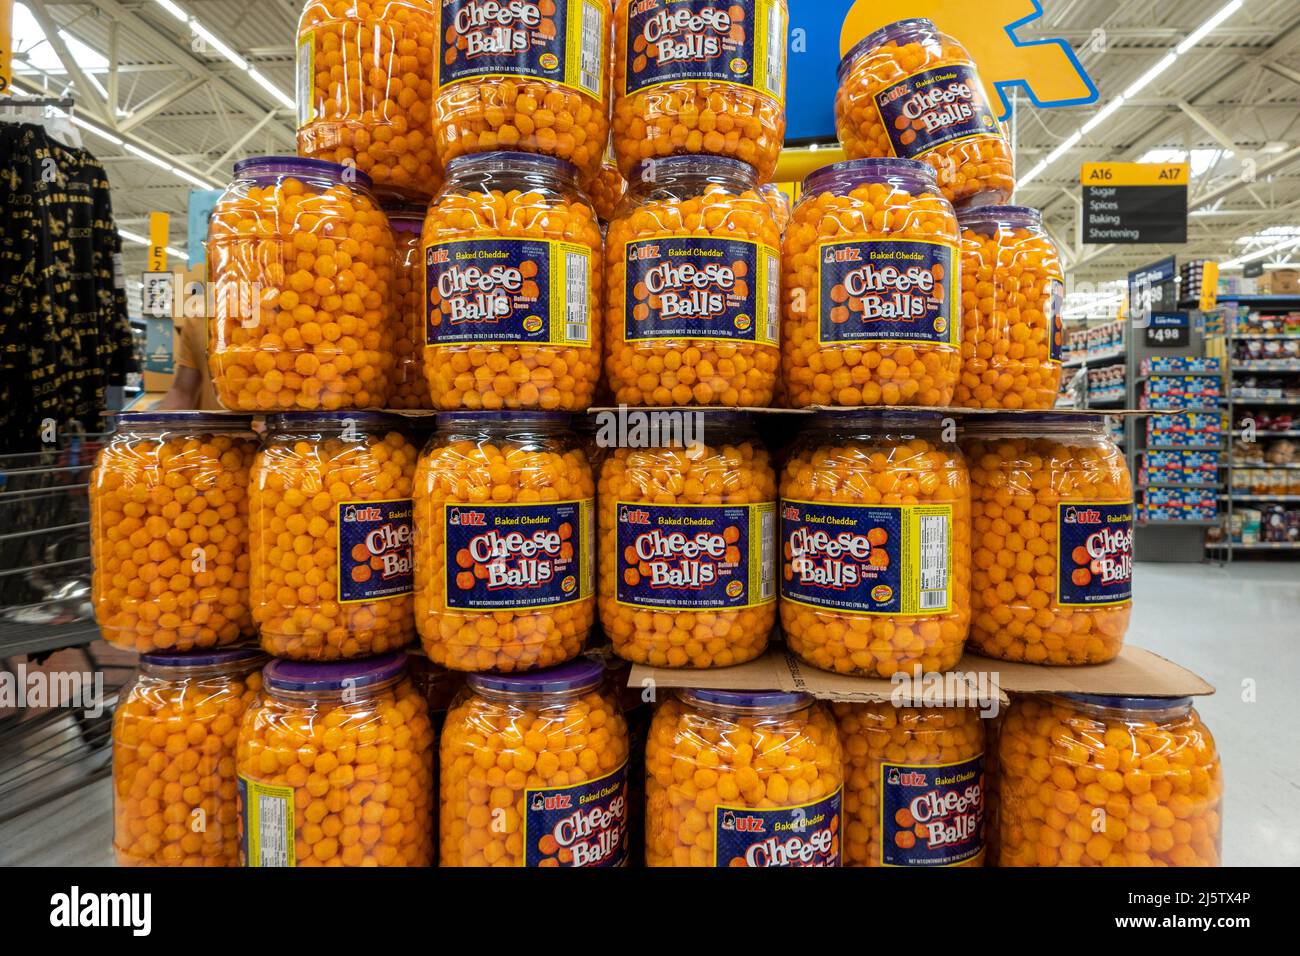 Gran pila de jarras, barriles con bolas de queso Cheddar horneadas por Utz en el supermercado estadounidense. Foto de stock